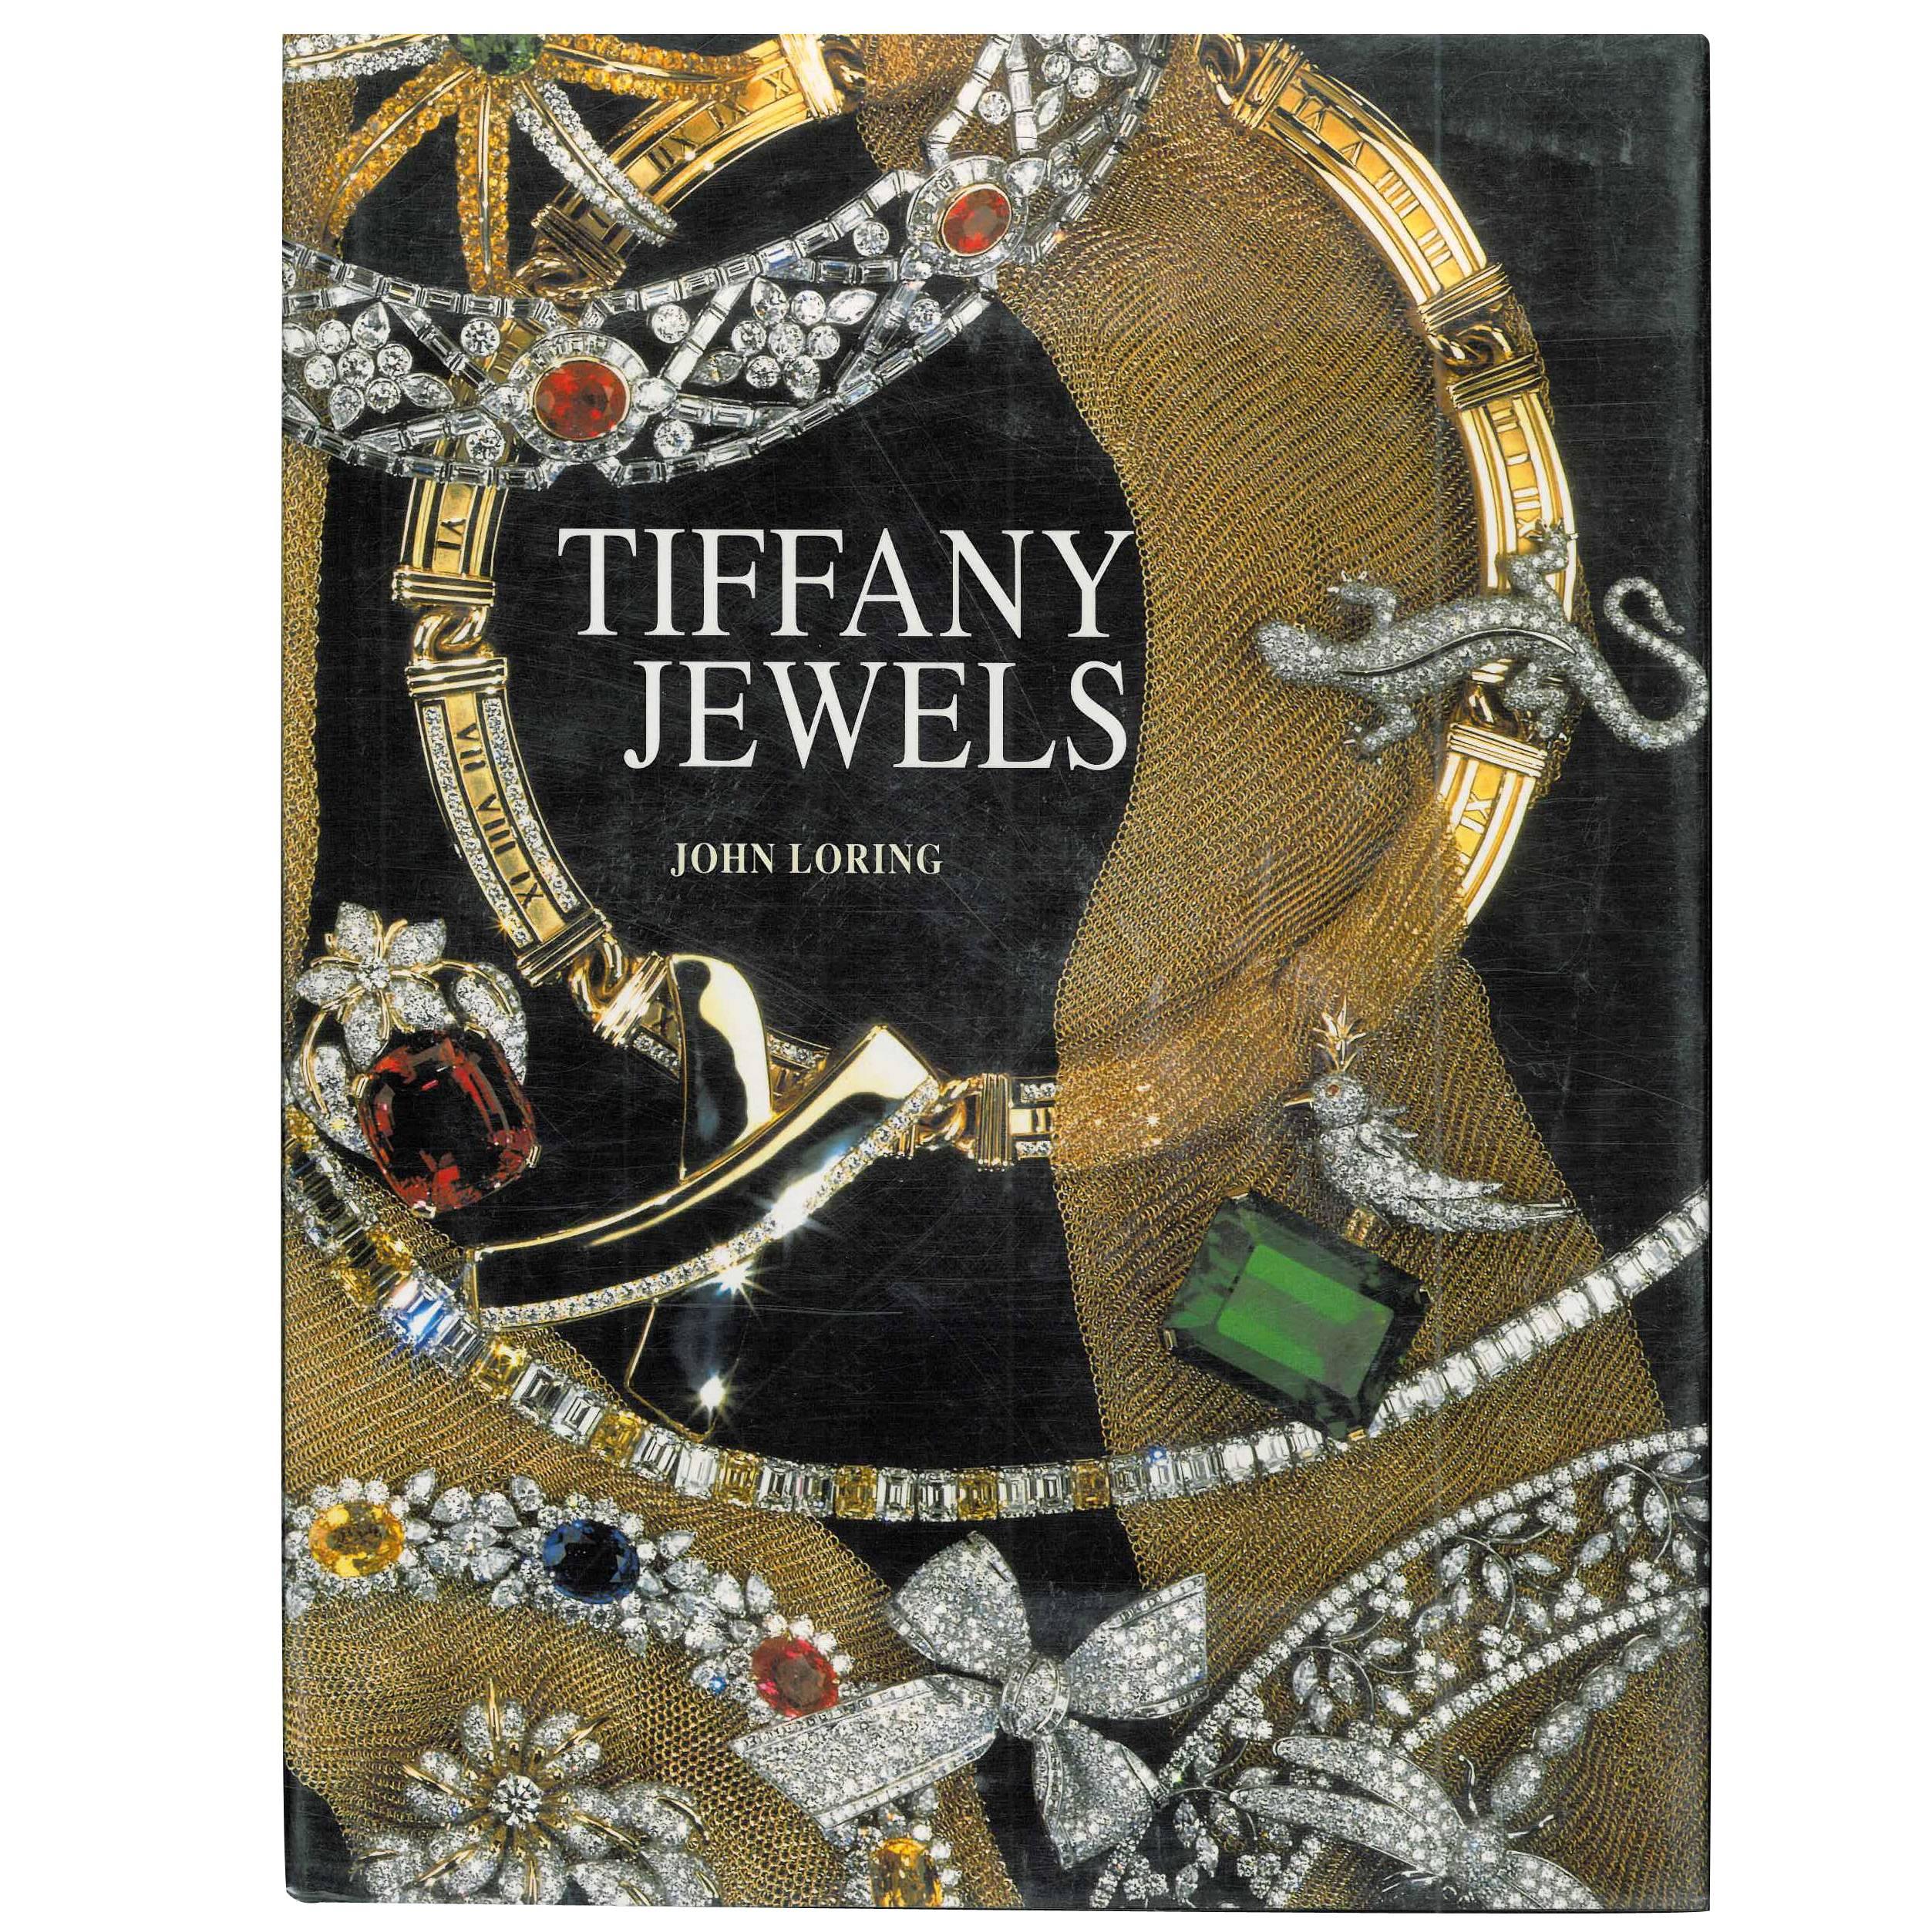 Book of Tiffany Jewels